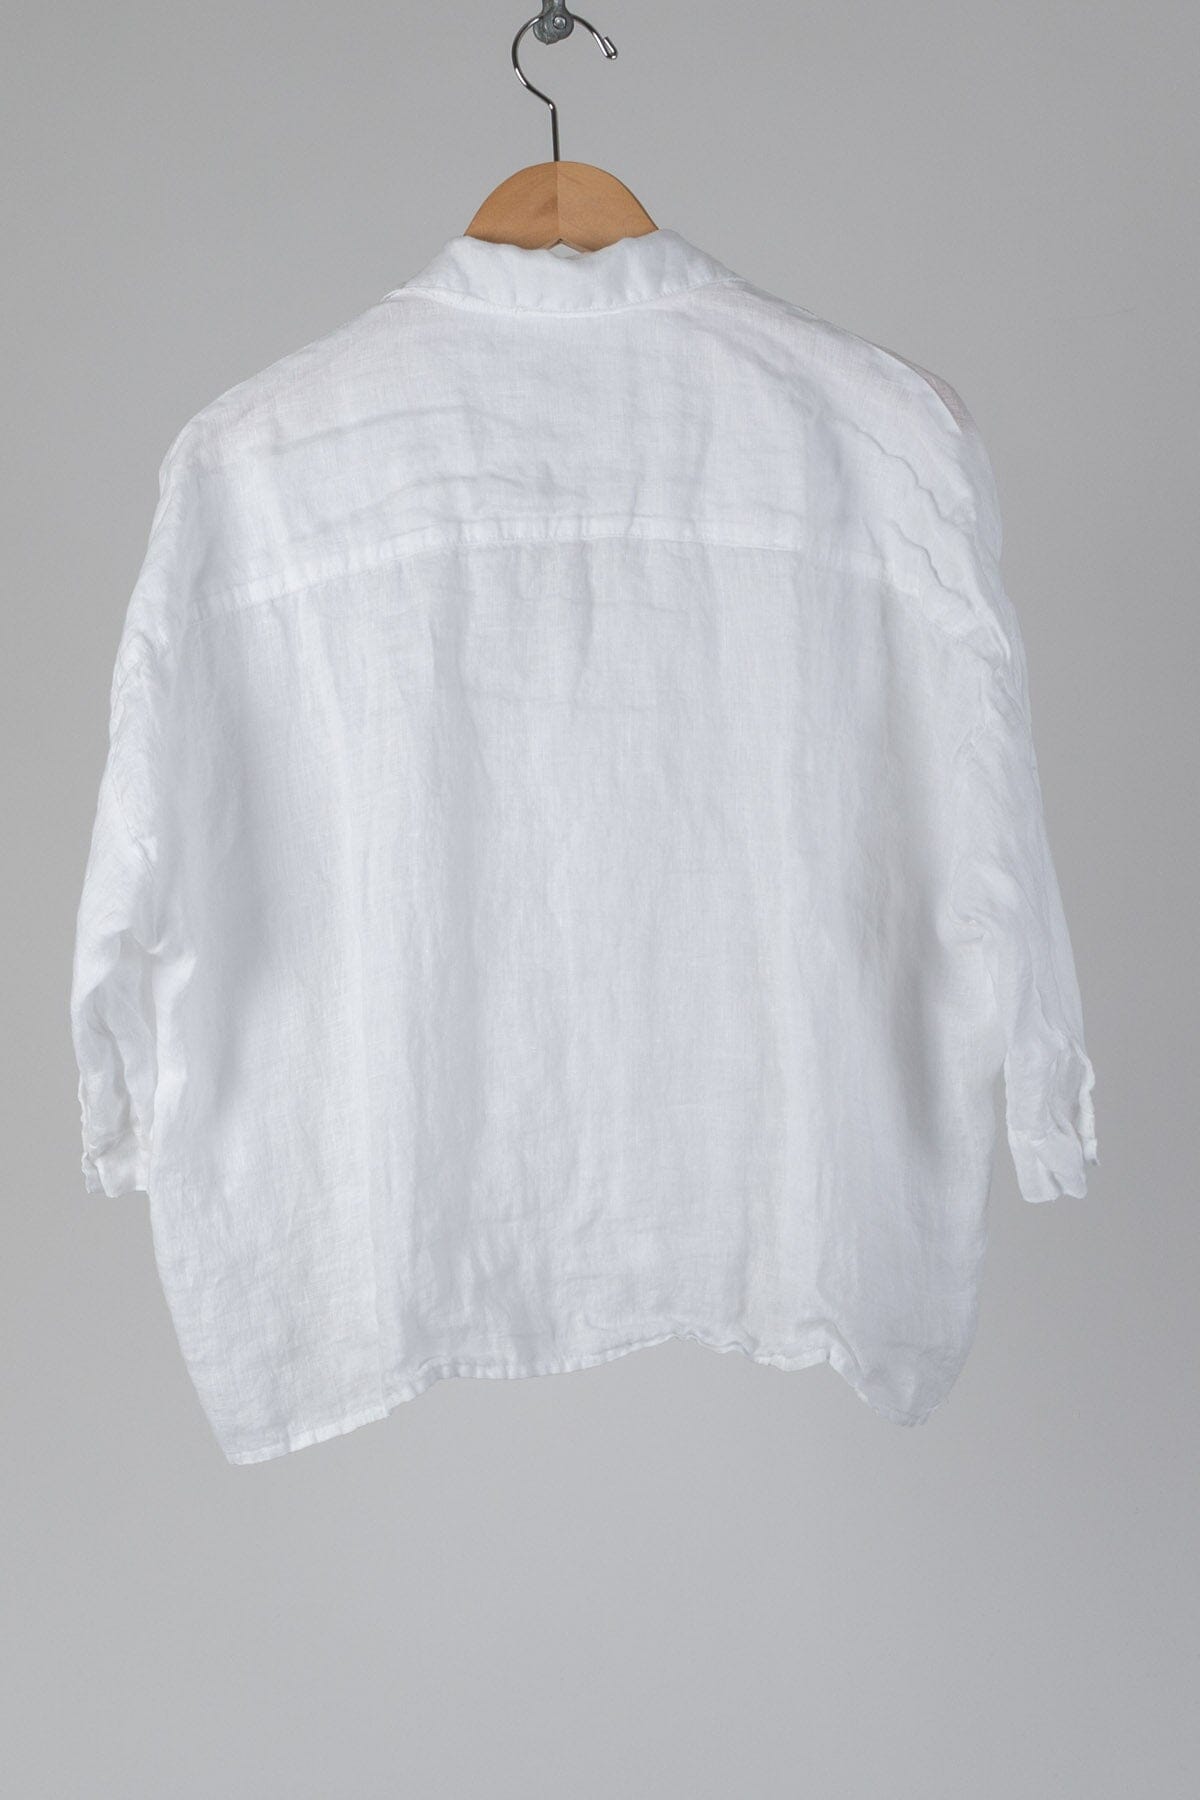 Rooney - Linen S10 - Linen Shirt/Top/Tunic CP Shades 